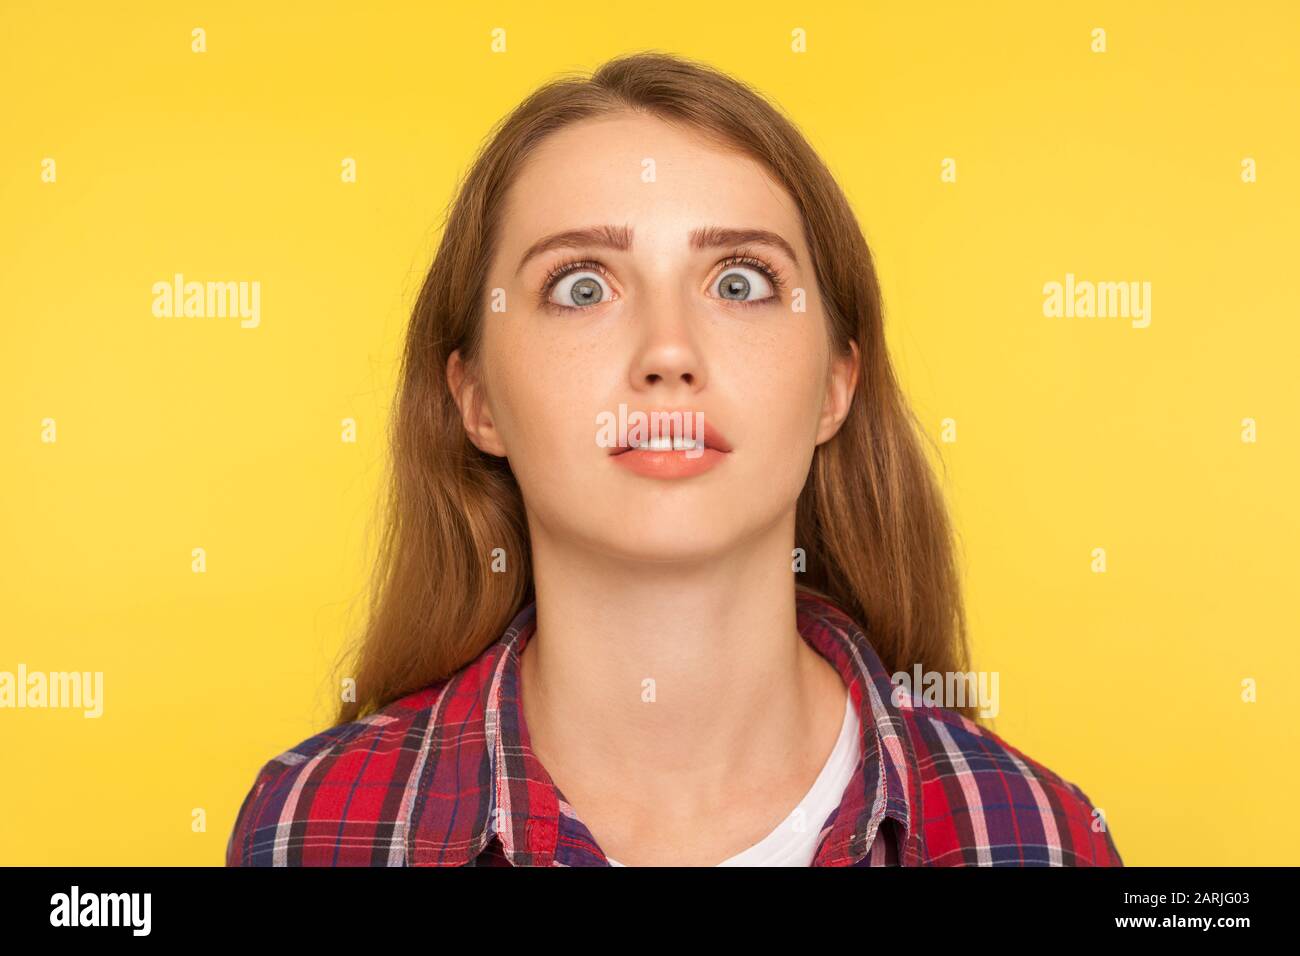 Closeup-Porträt von lustiger albern Ingwerfrau in kariertem Hemd, das mit dummem dummen Gesicht quer aufschauend aussieht, Mädchen hat unangenehme verwirrte komische Darstellung Stockfoto